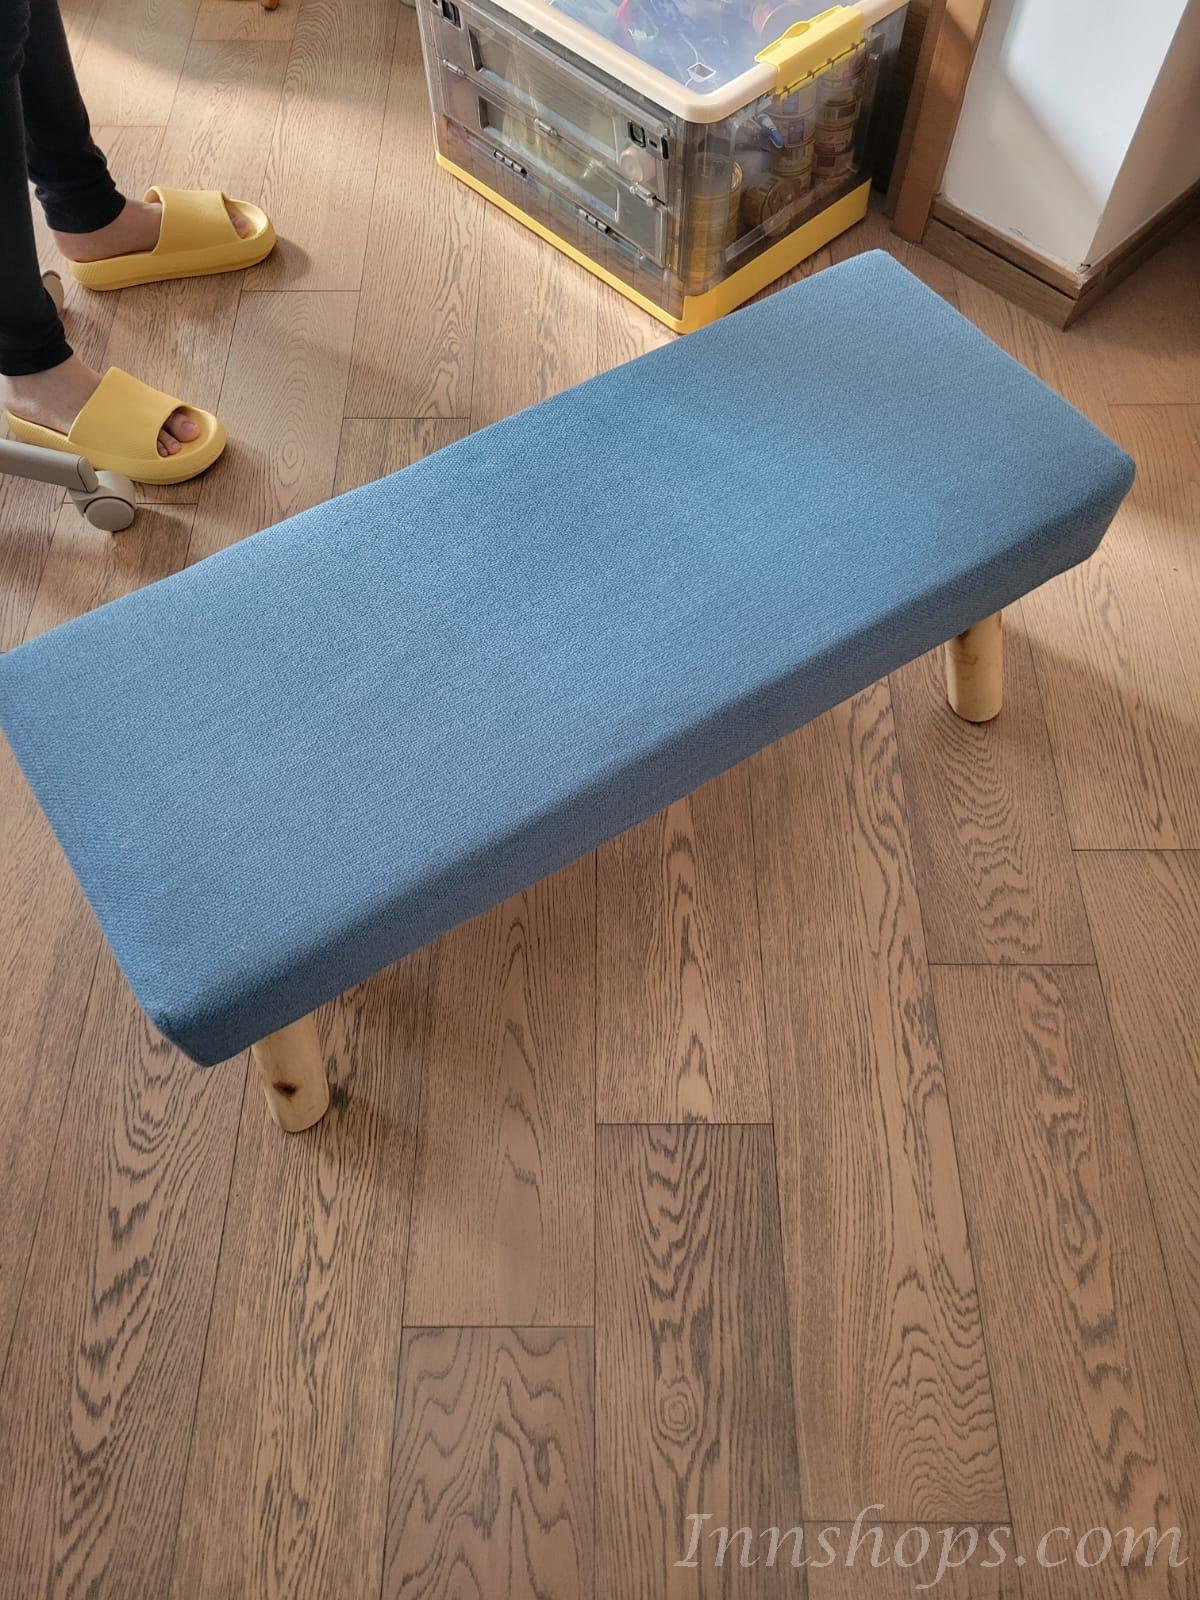 實木布藝換鞋凳梳妝凳床邊長椅子*84cm (IS7704)